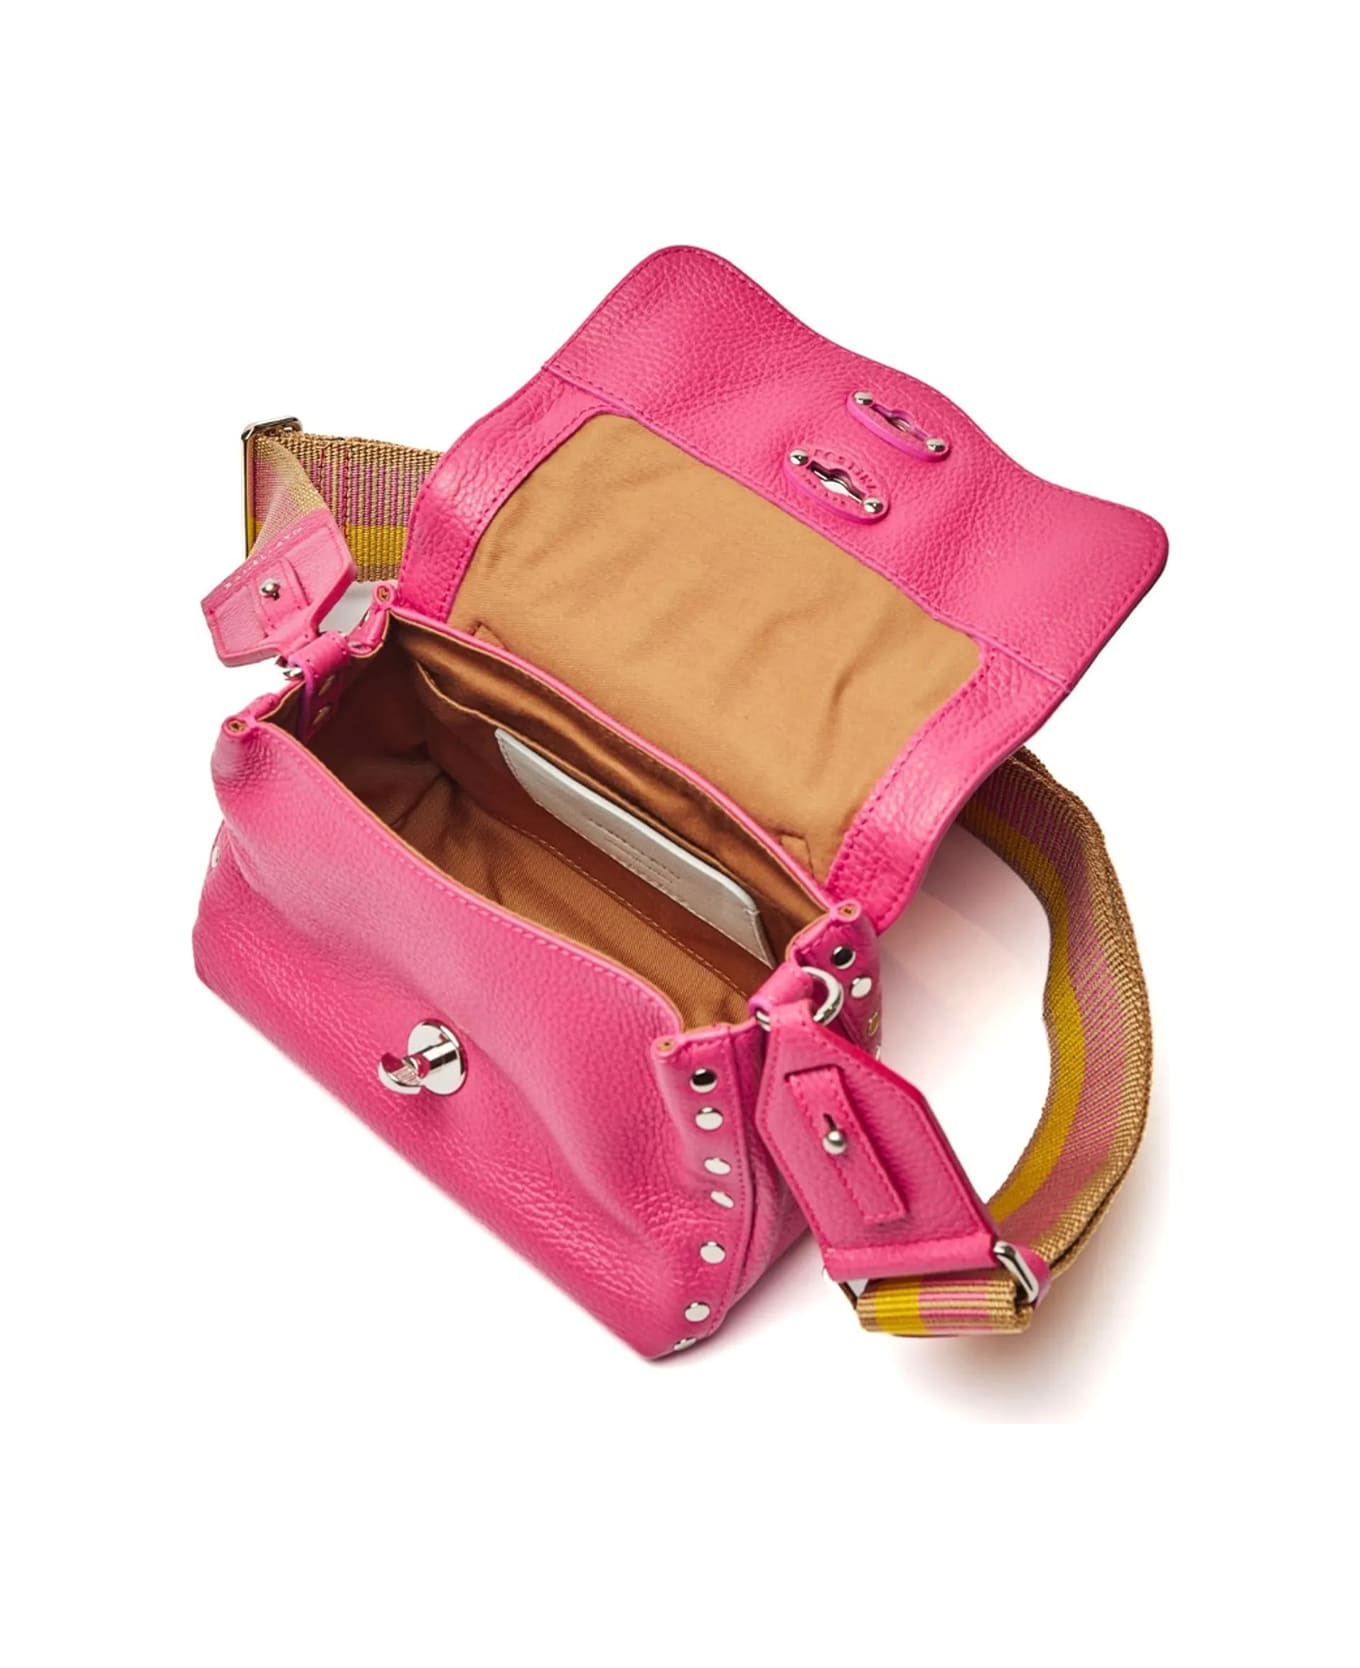 Zanellato Postina Daily Giorno Bag In Fuchsia With Shoulder Strap - ROSE TRIESTE